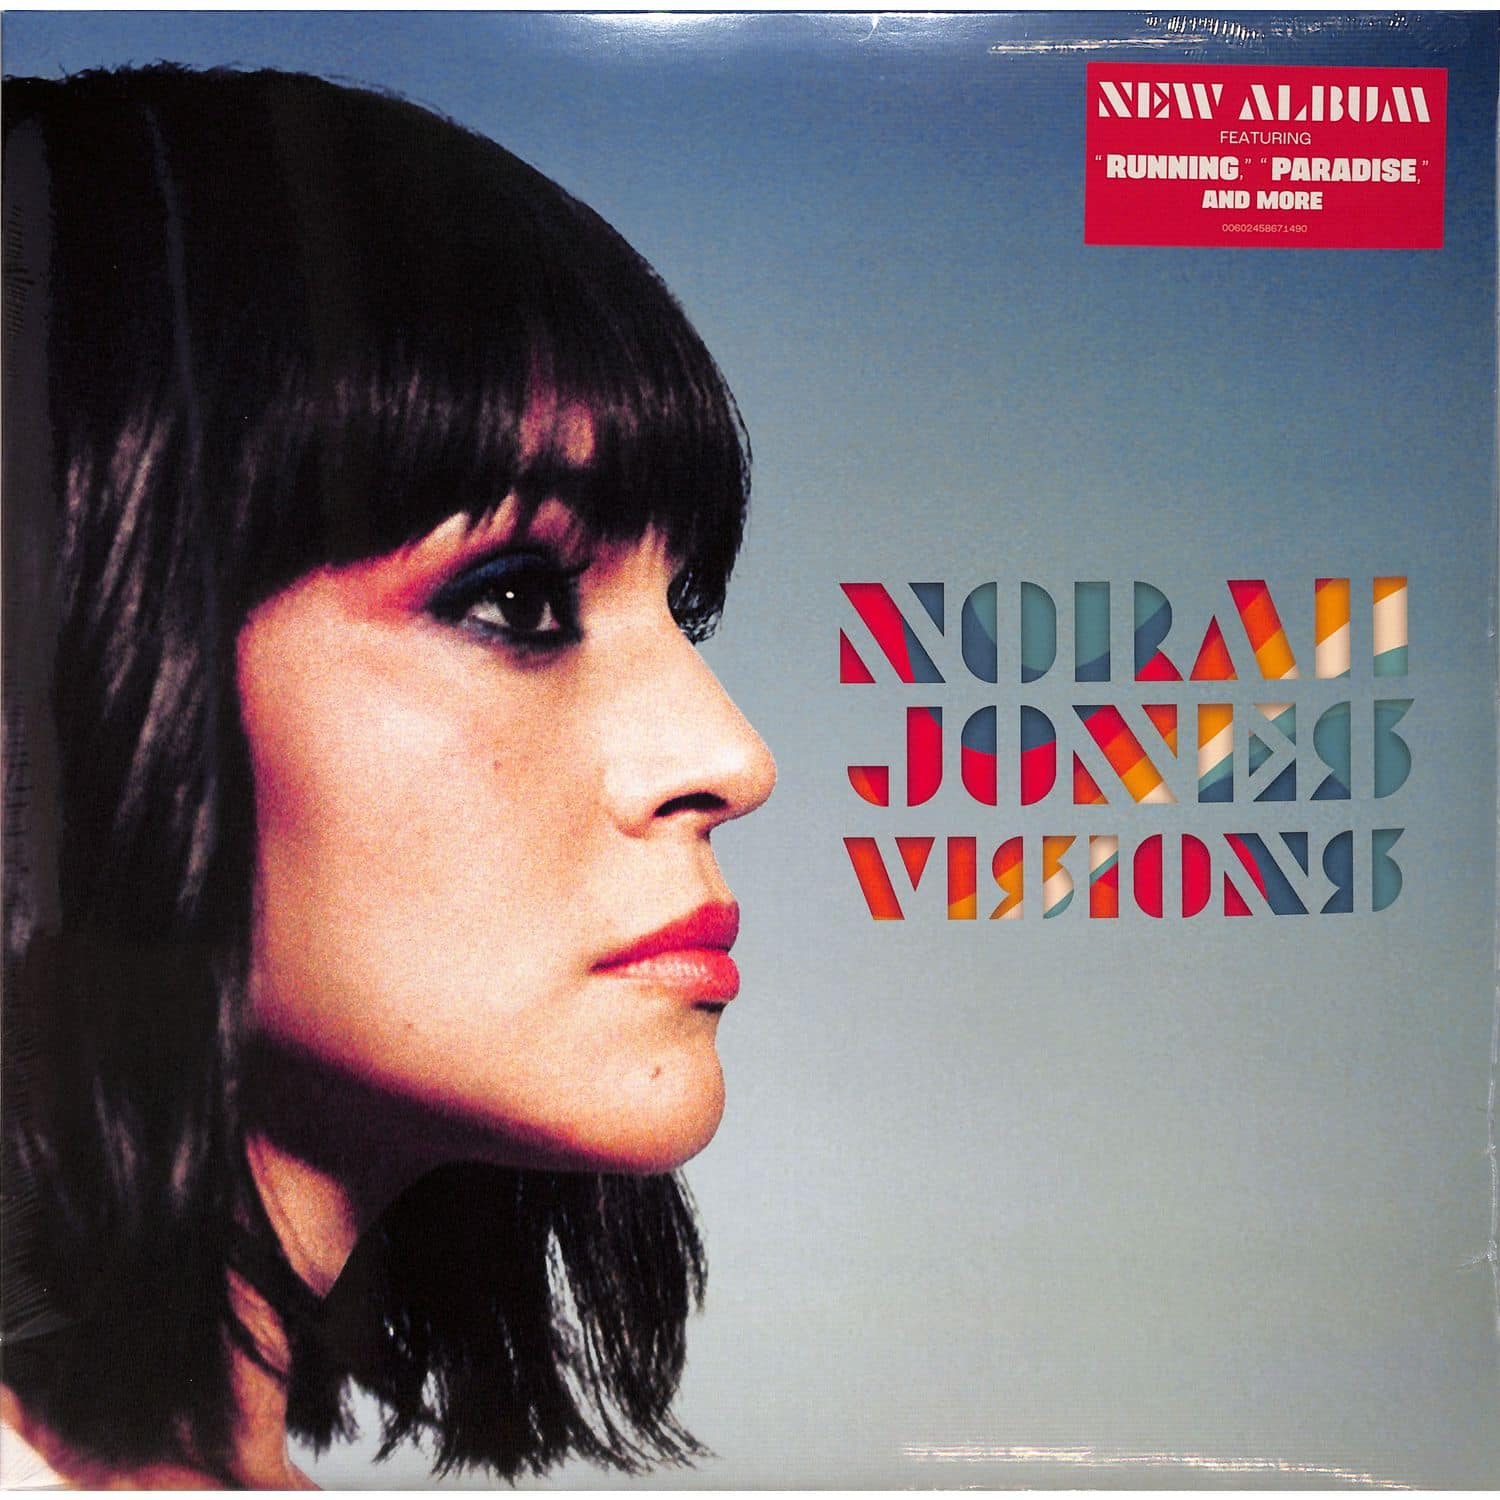 Norah Jones - VISIONS 